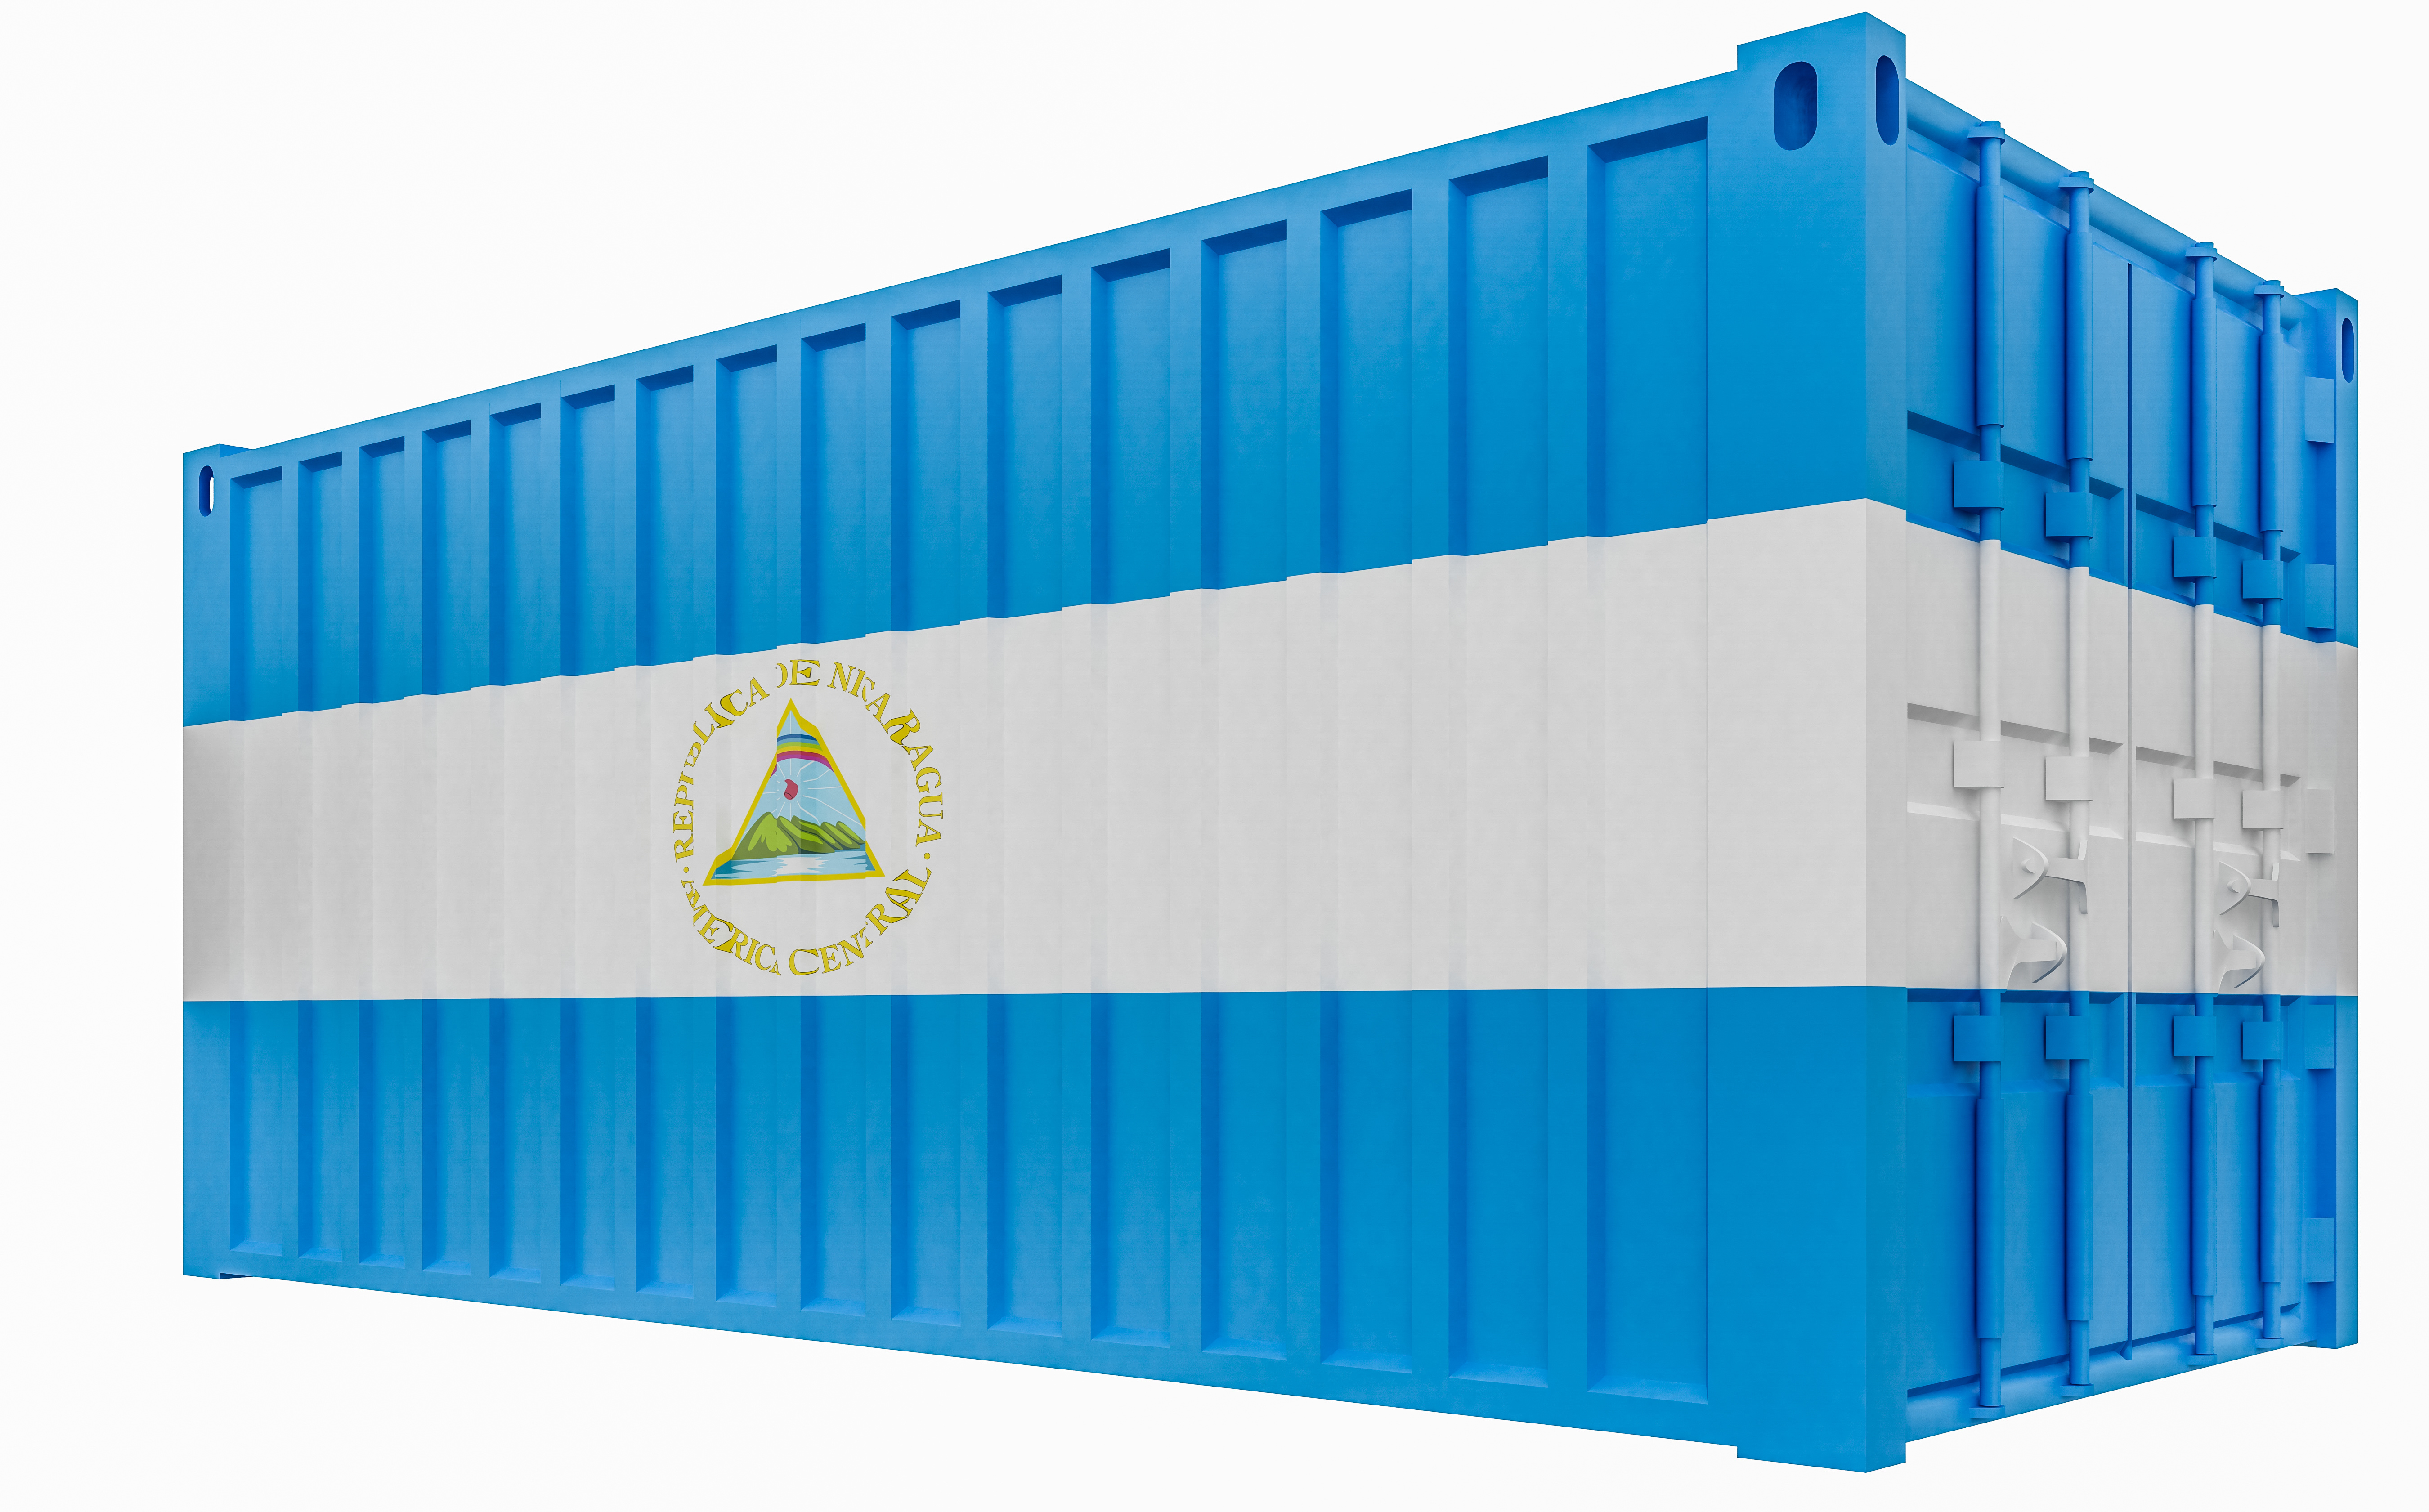 Tarifas de envío marítimo de cajas a Centroamérica